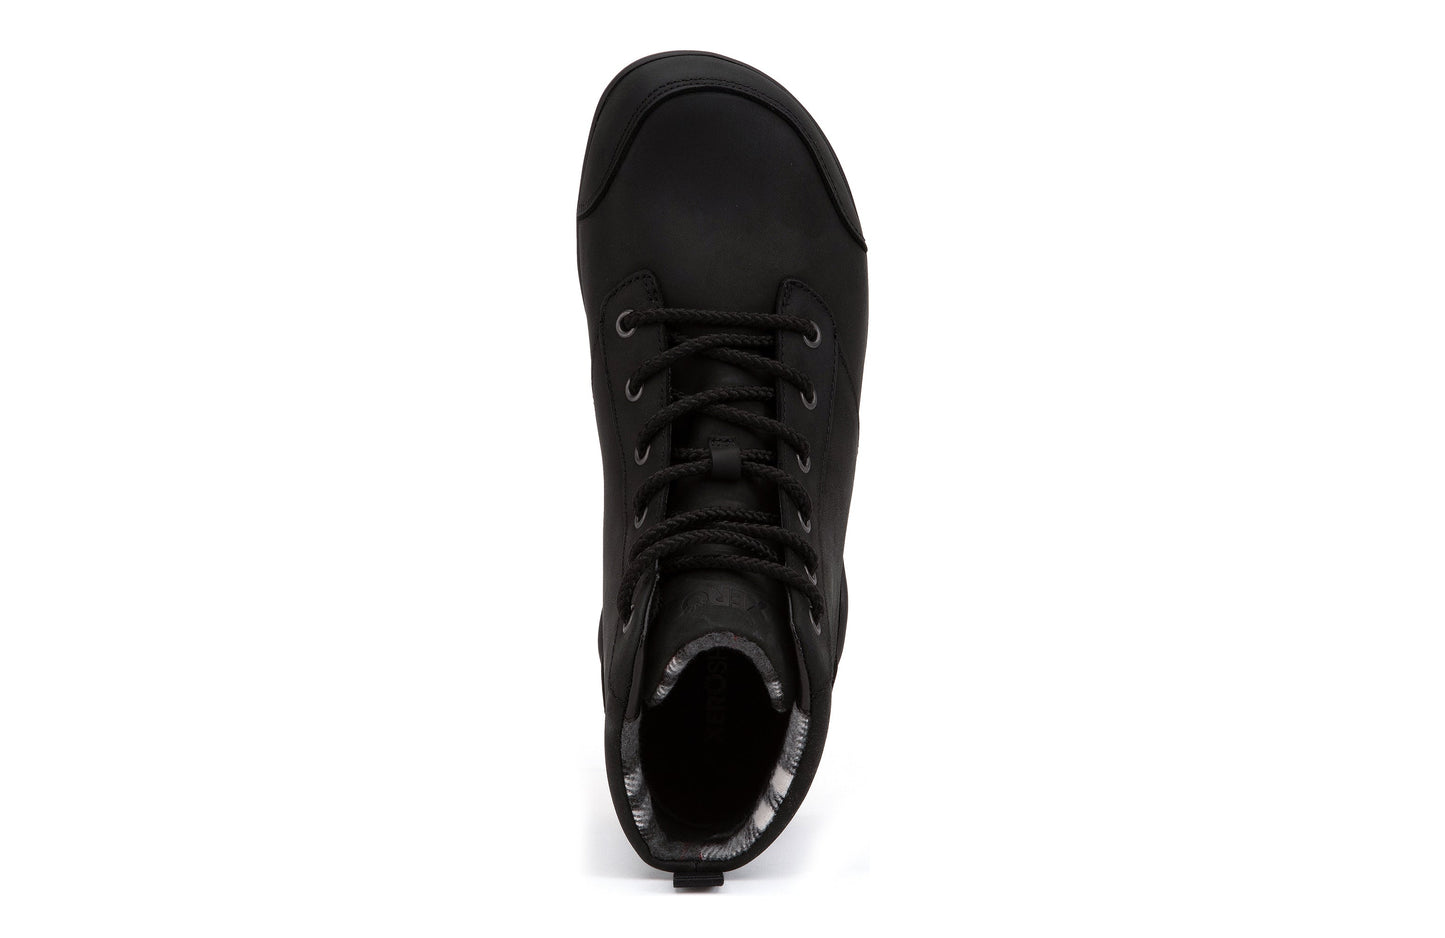 Xero Shoes Denver Leather barfods vinterstøvler til mænd i farven black, top